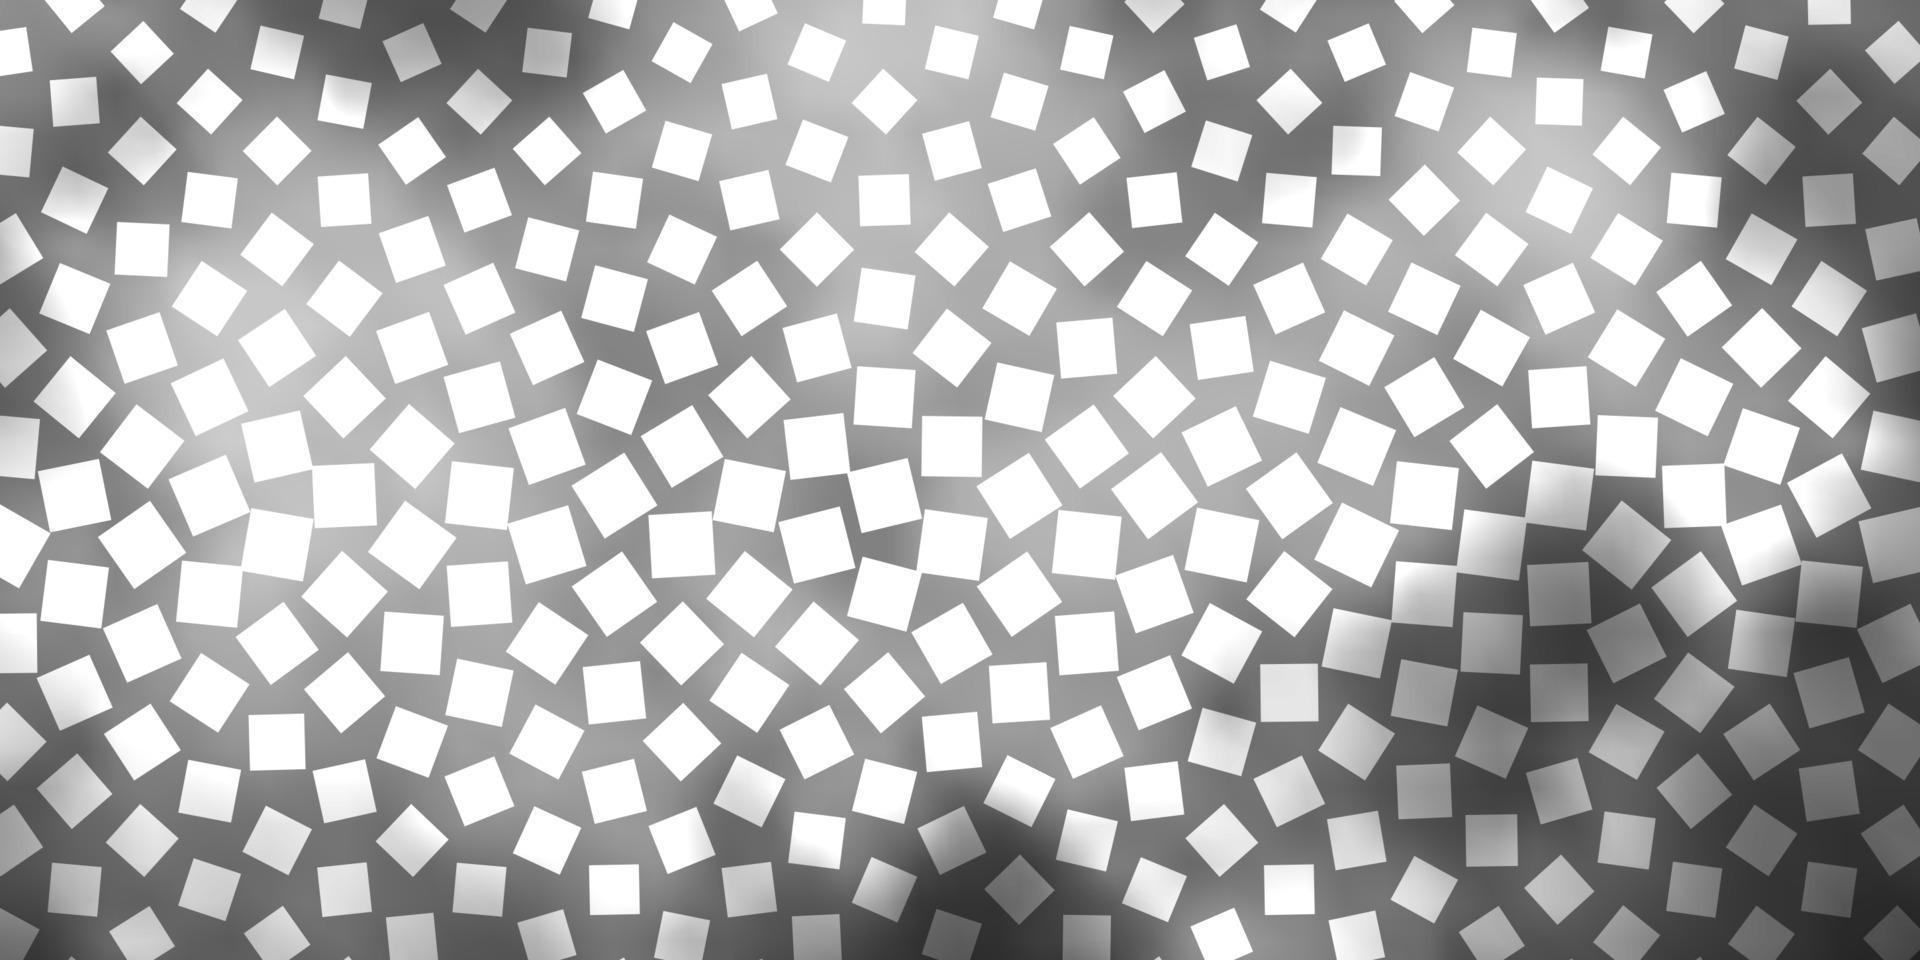 fond de vecteur gris clair dans un style polygonal.